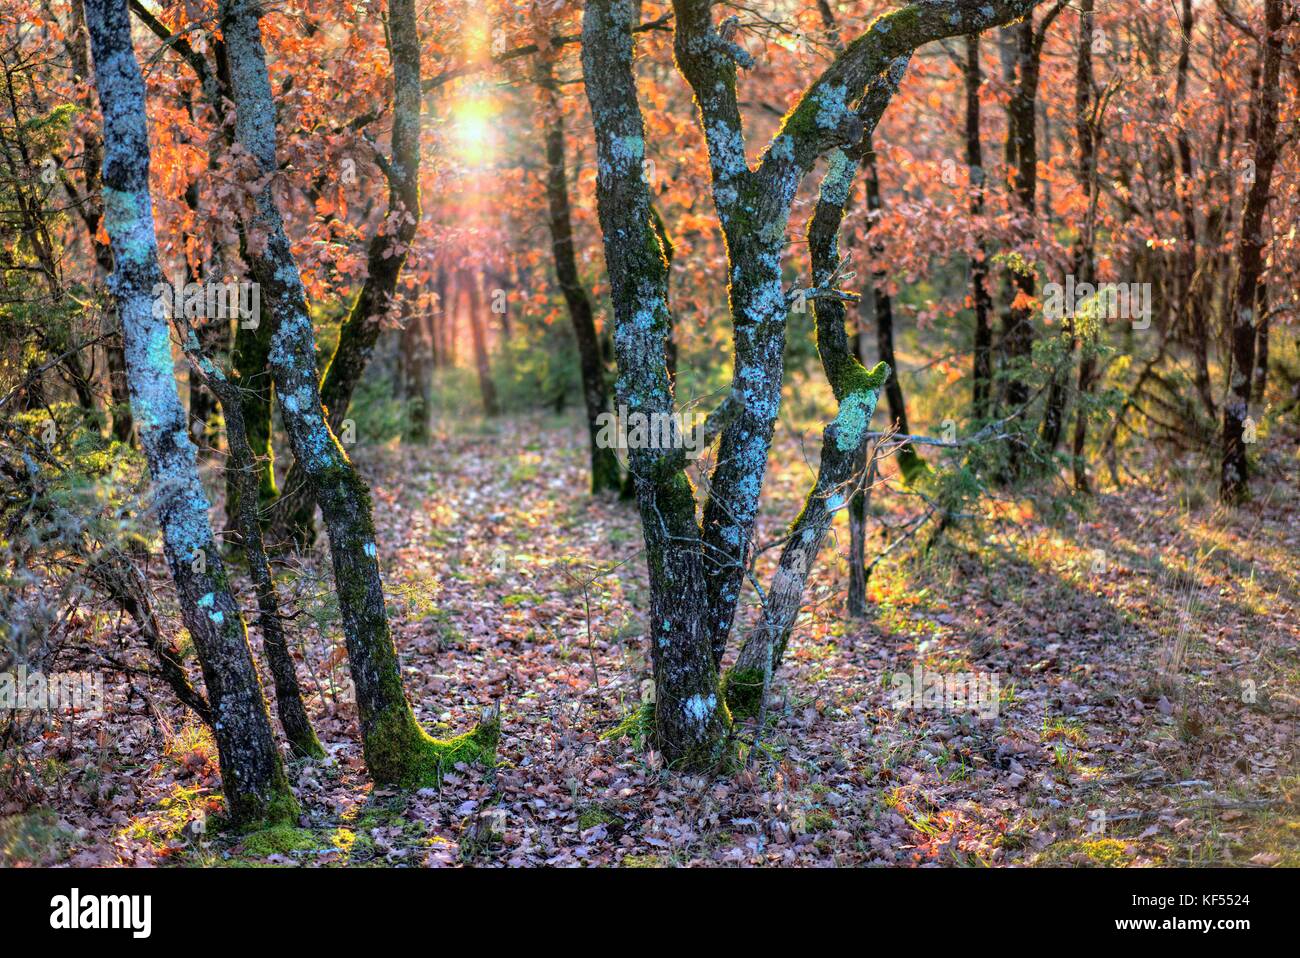 Europa, Frankreich, Royal, Aveyron, rougier camares de, ein Eichenwald im Herbst. Stockfoto